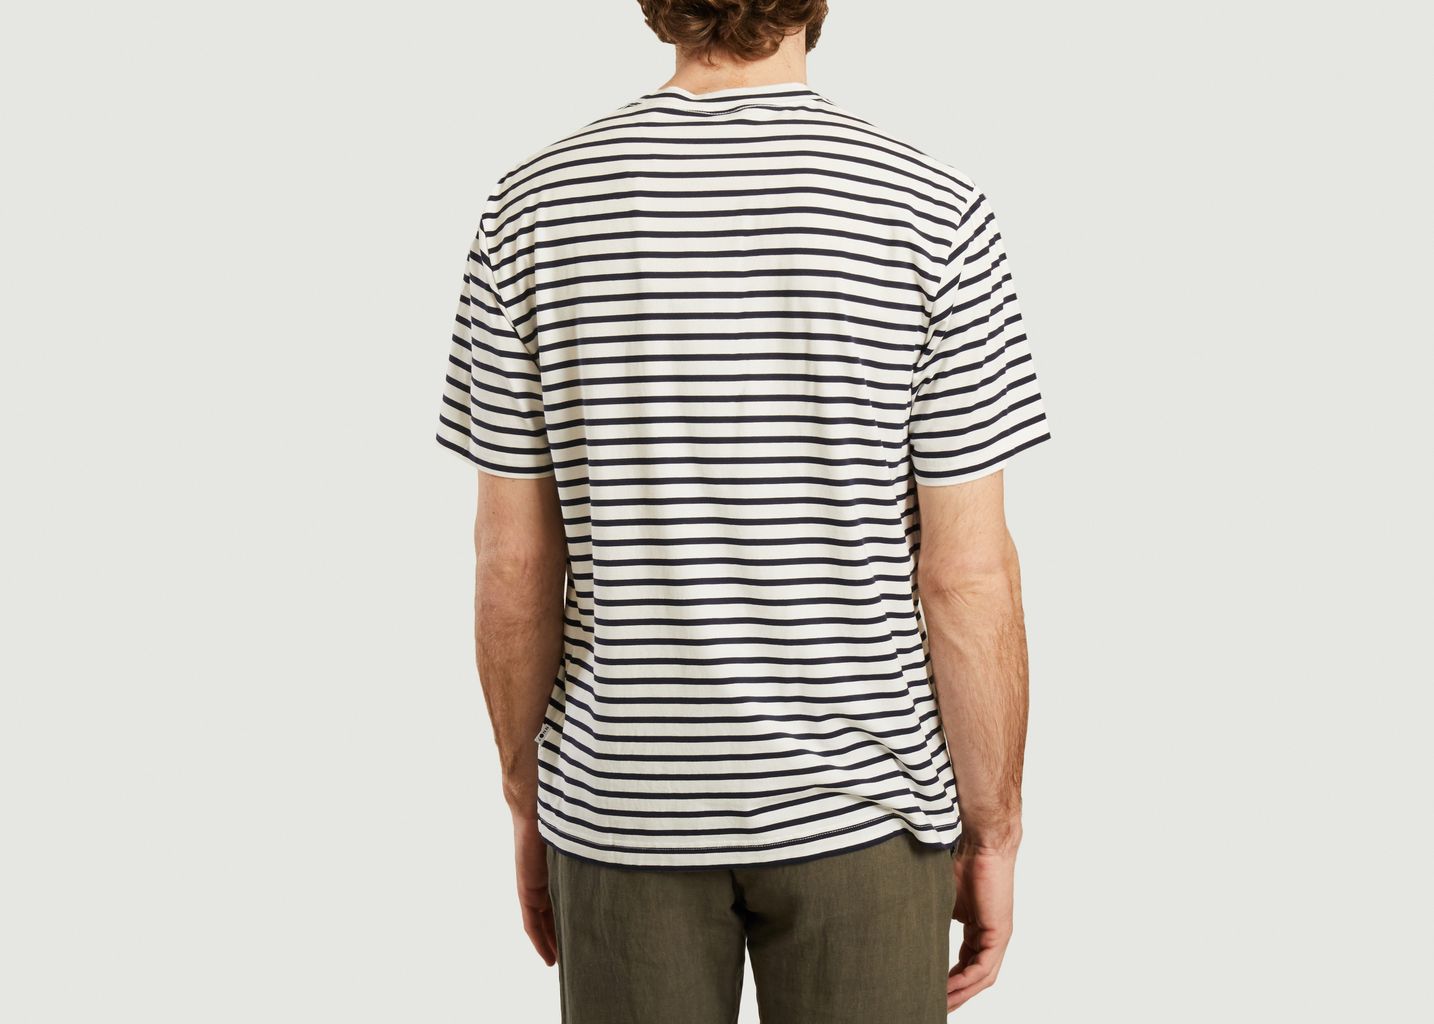 Kurt T-shirt - NN07